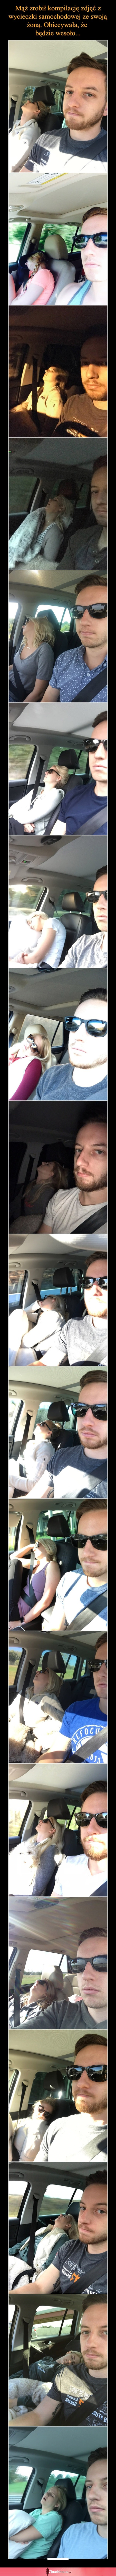 Mąż zrobił komplikację zdjęć z wycieczki samochodowej ze swoją żoną. Obiecywała, że będzie wesoło